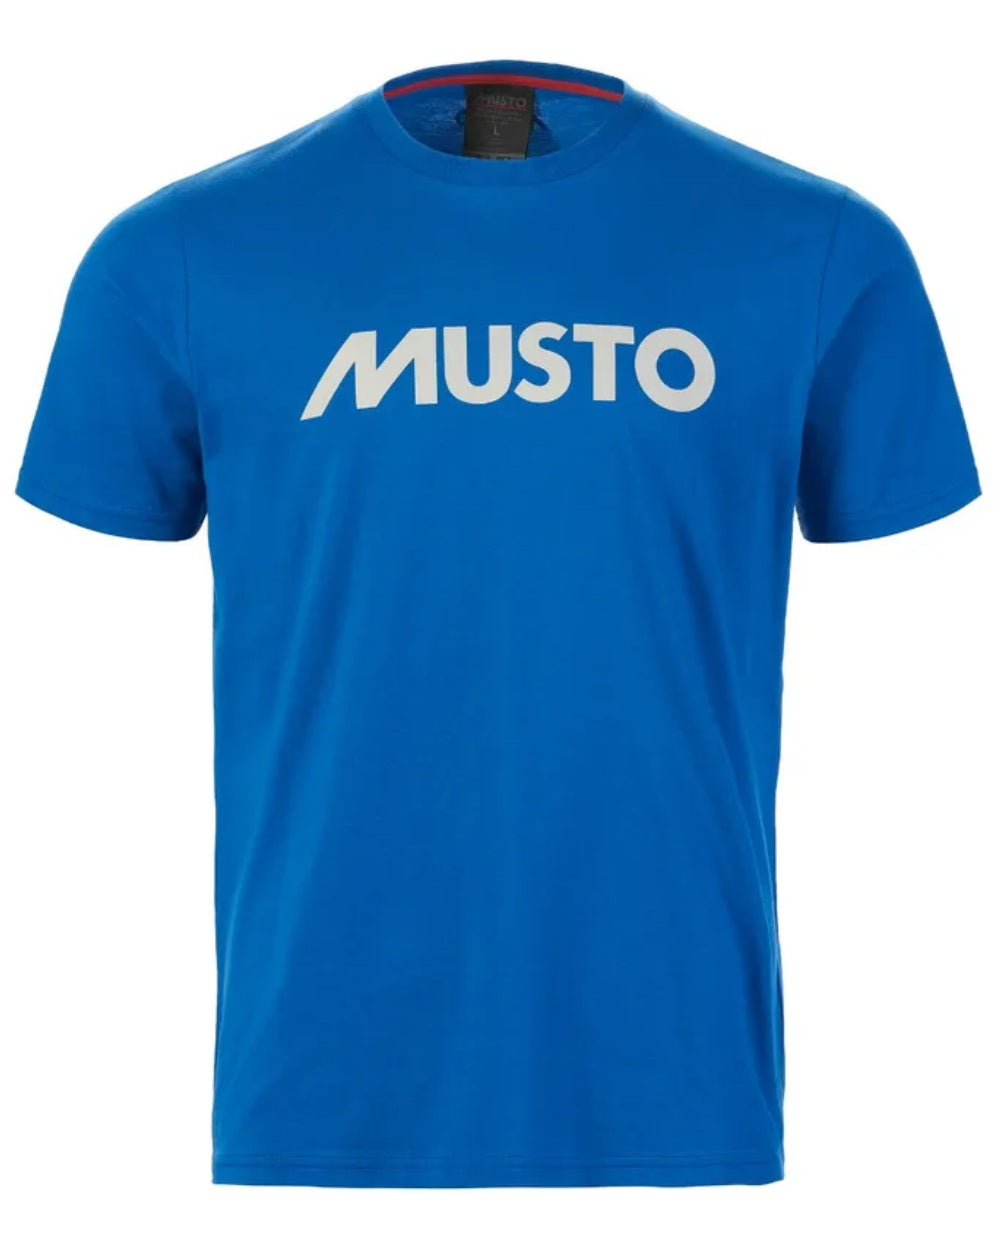 Aruba Blue Coloured Musto Logo Tee On A White Background 